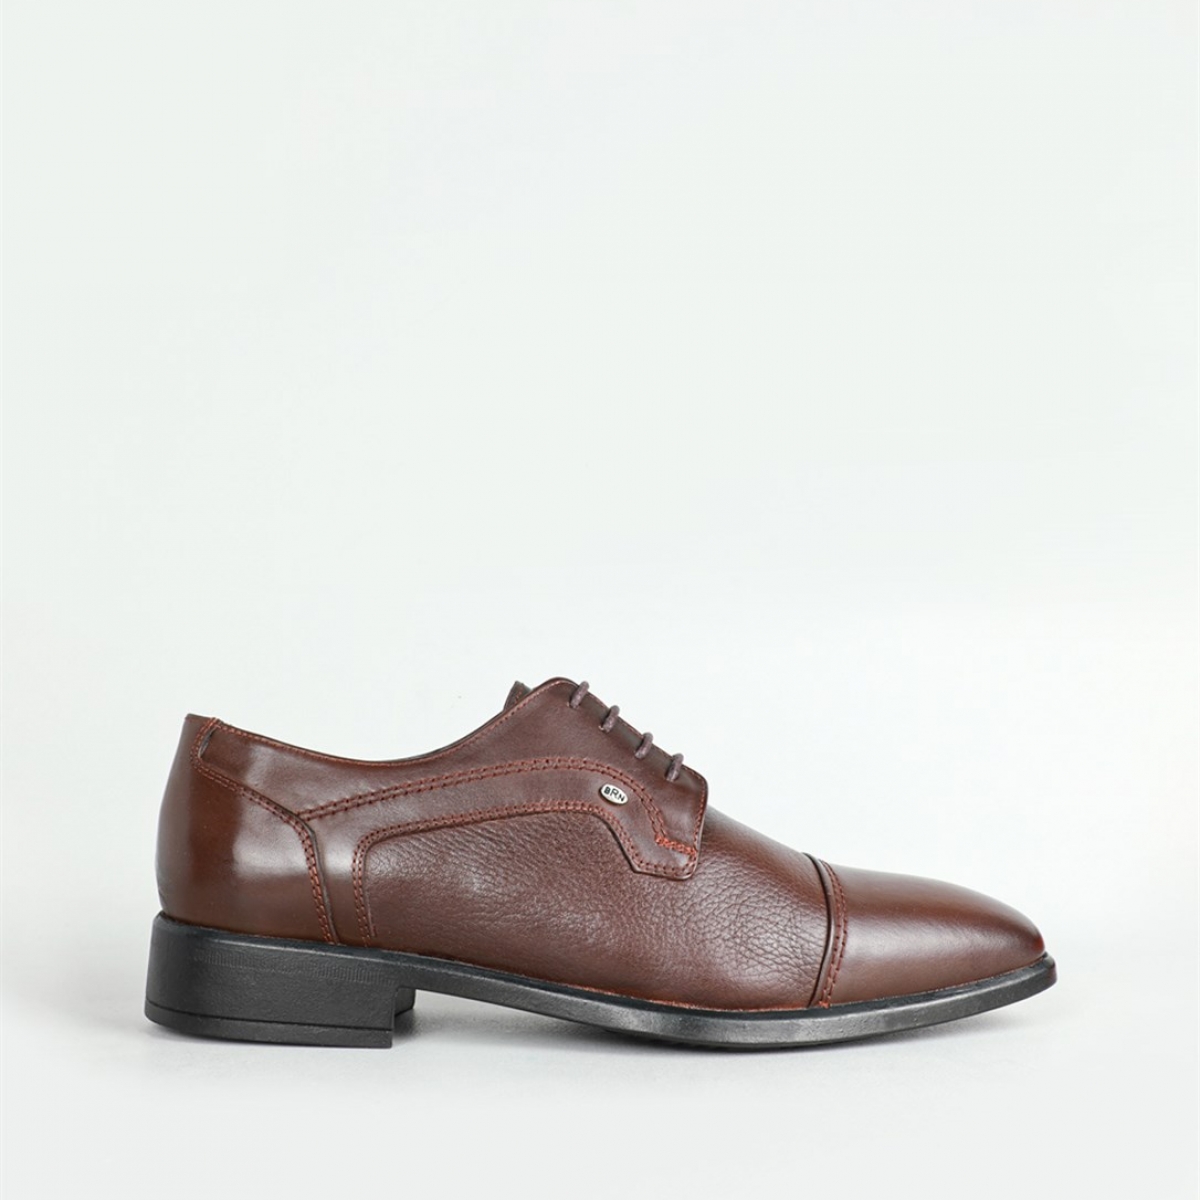 Flo Deri Klasik Kahverengi Erkek Ayakkabı 282. 1